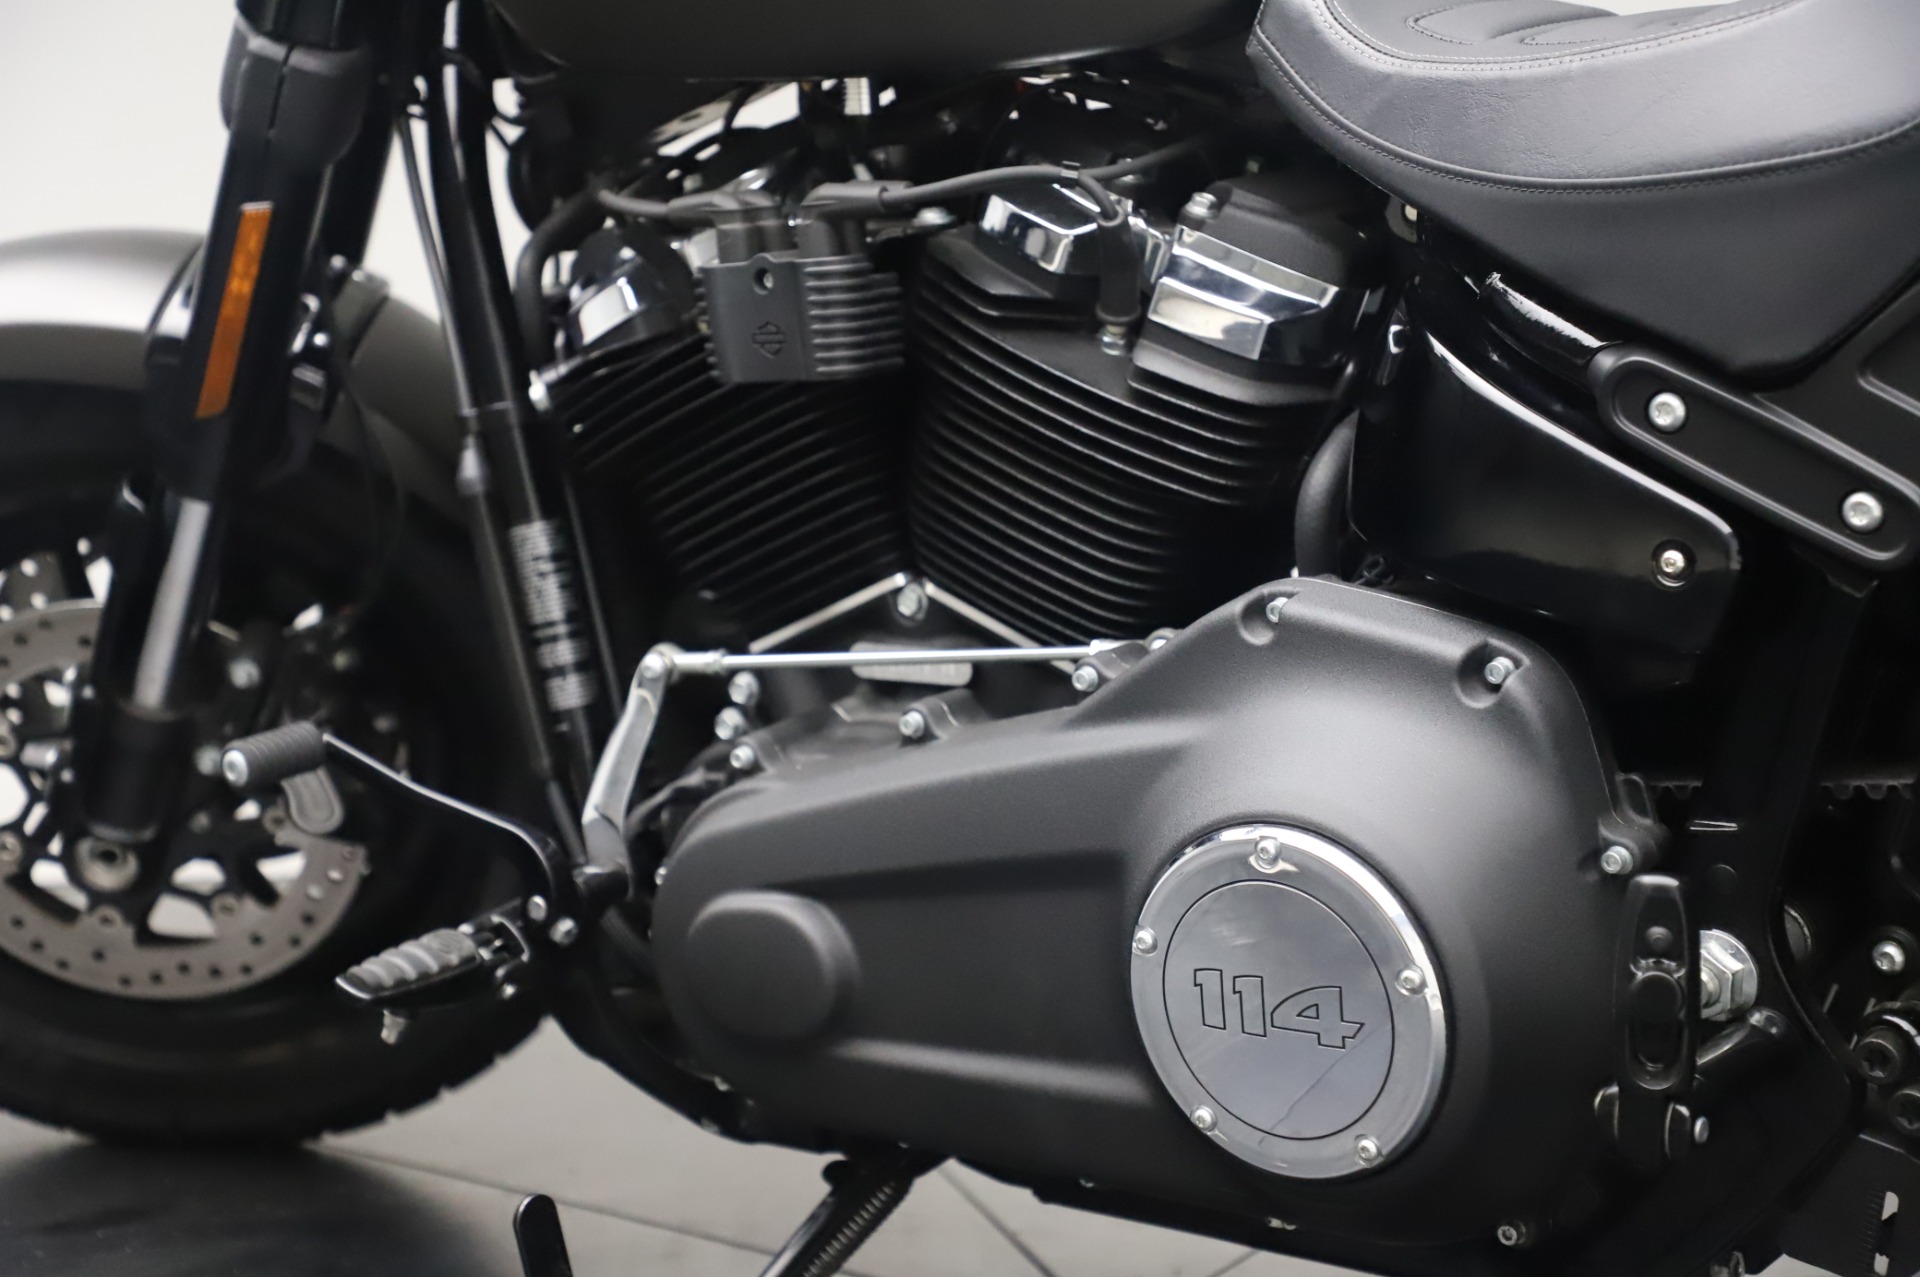 Pre-Owned 2020 Harley-Davidson Fat Bob 114 For Sale () | Miller ...